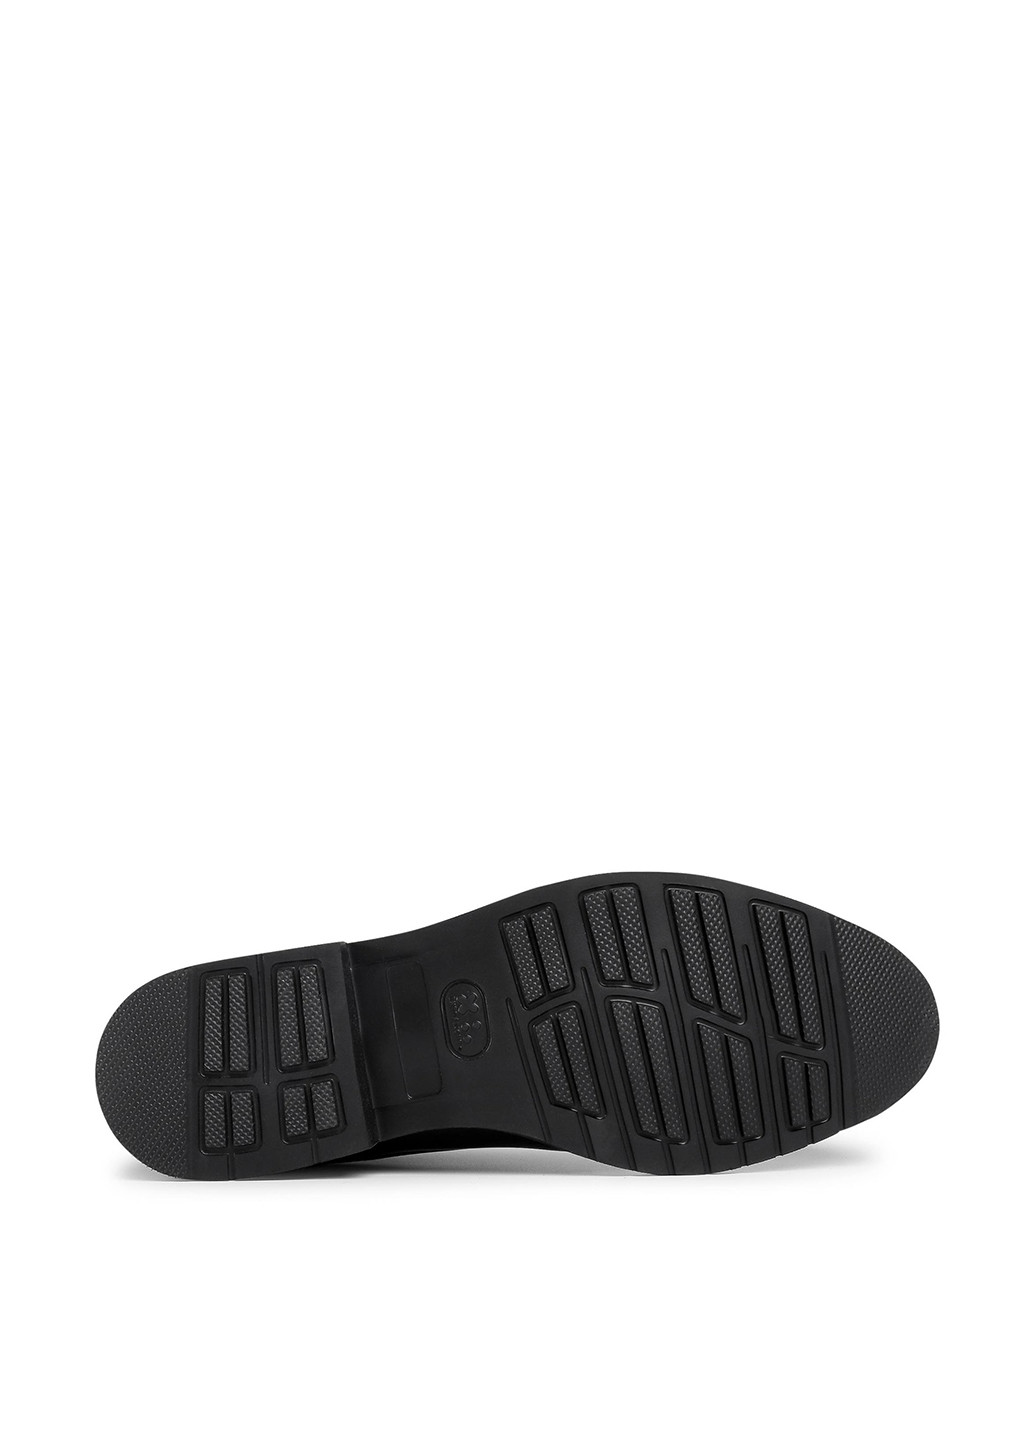 Черные осенние черевики lasocki for men mi08-c774-706-09 дезерты Lasocki for men